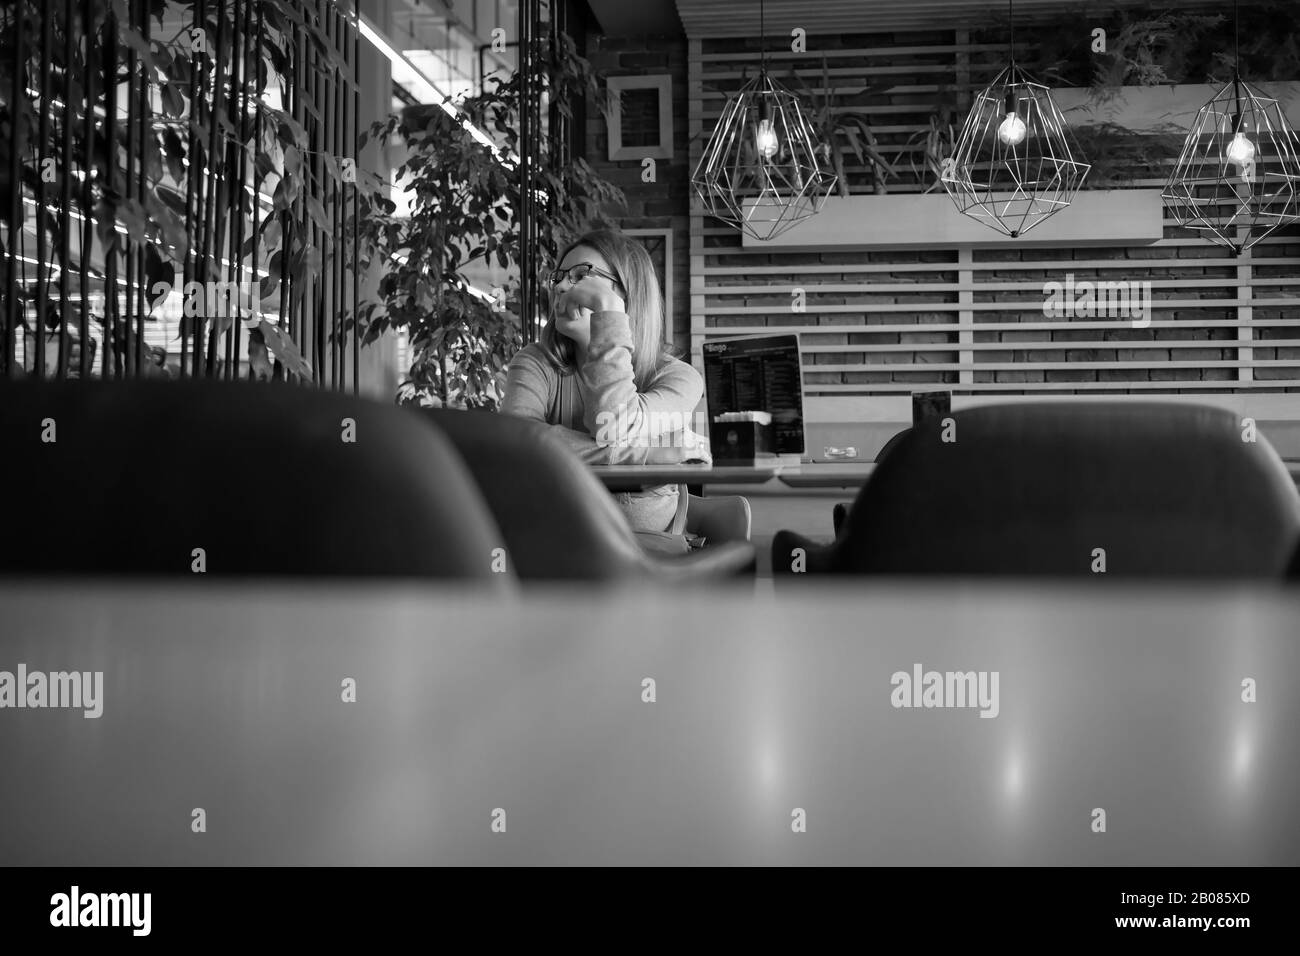 Šamac, Bosnien und Herzegowina, Okt 3, 2019: Frau in einem Café sitzen Stockfoto